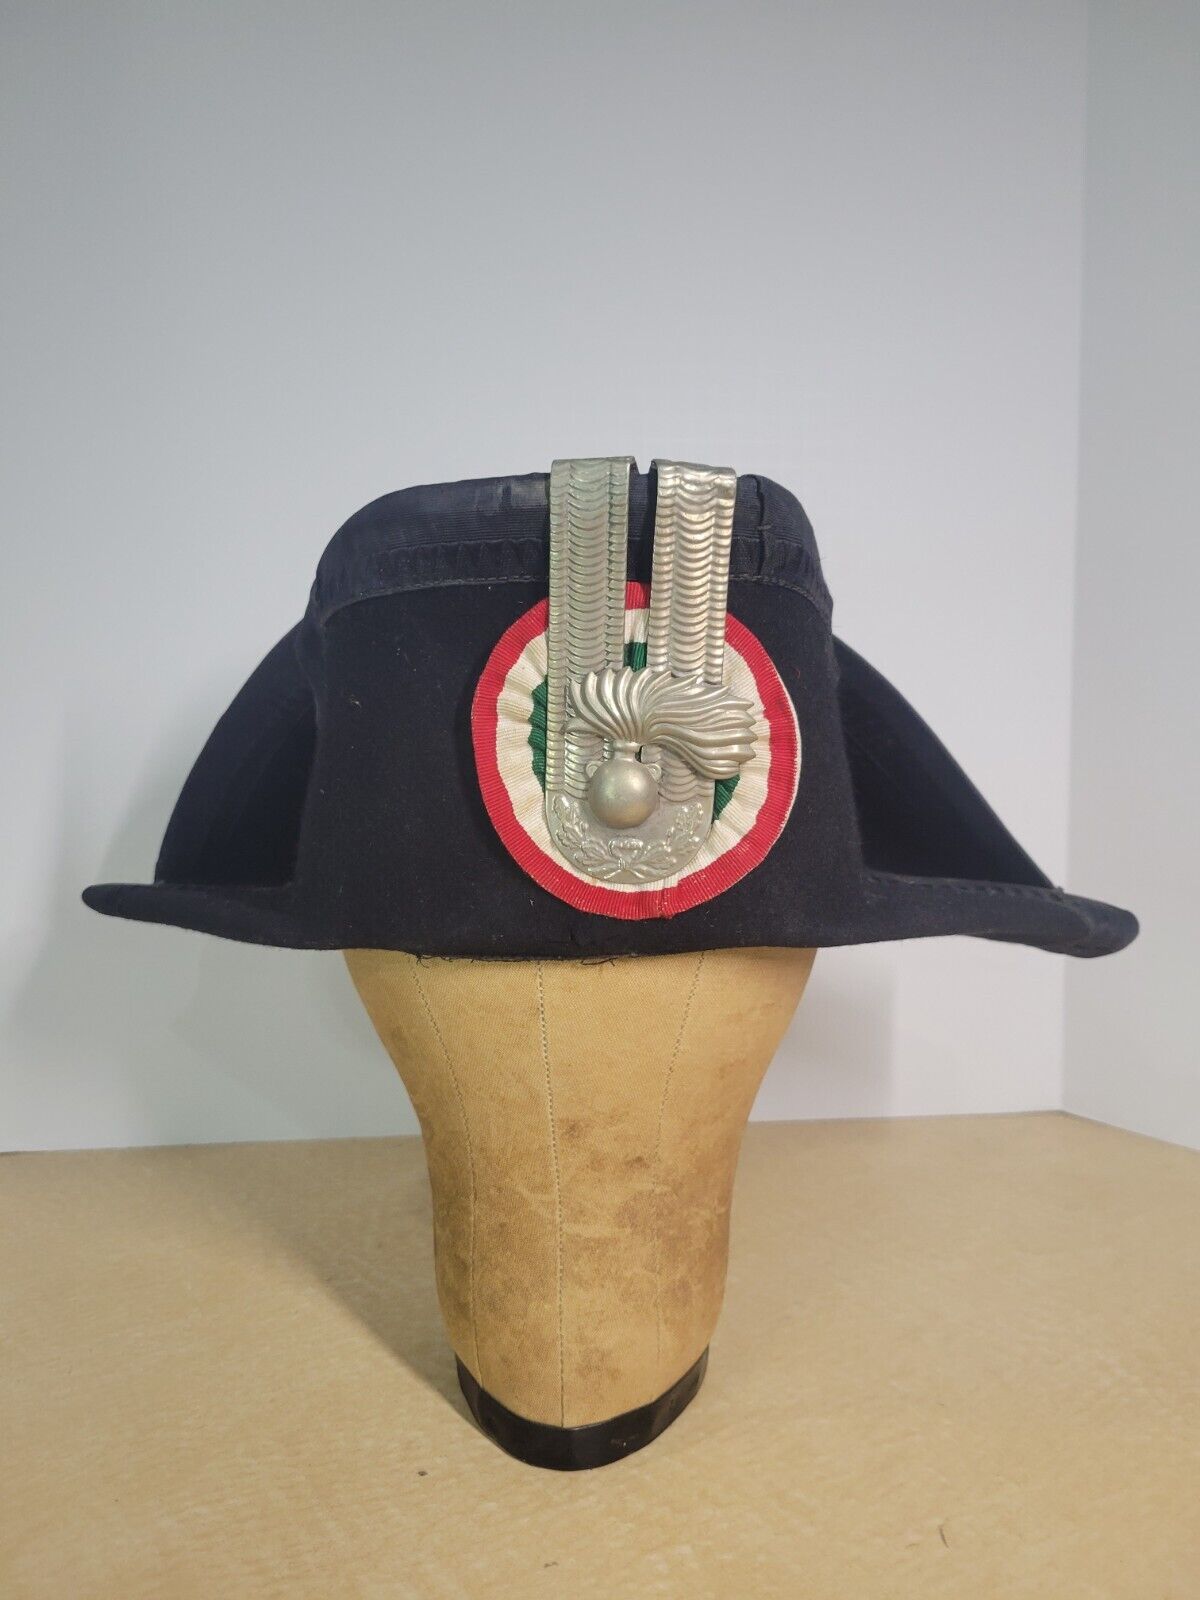 Lucerna Vintage Original Carabinieri Traditional Parade Uniform Hat Cap Police 